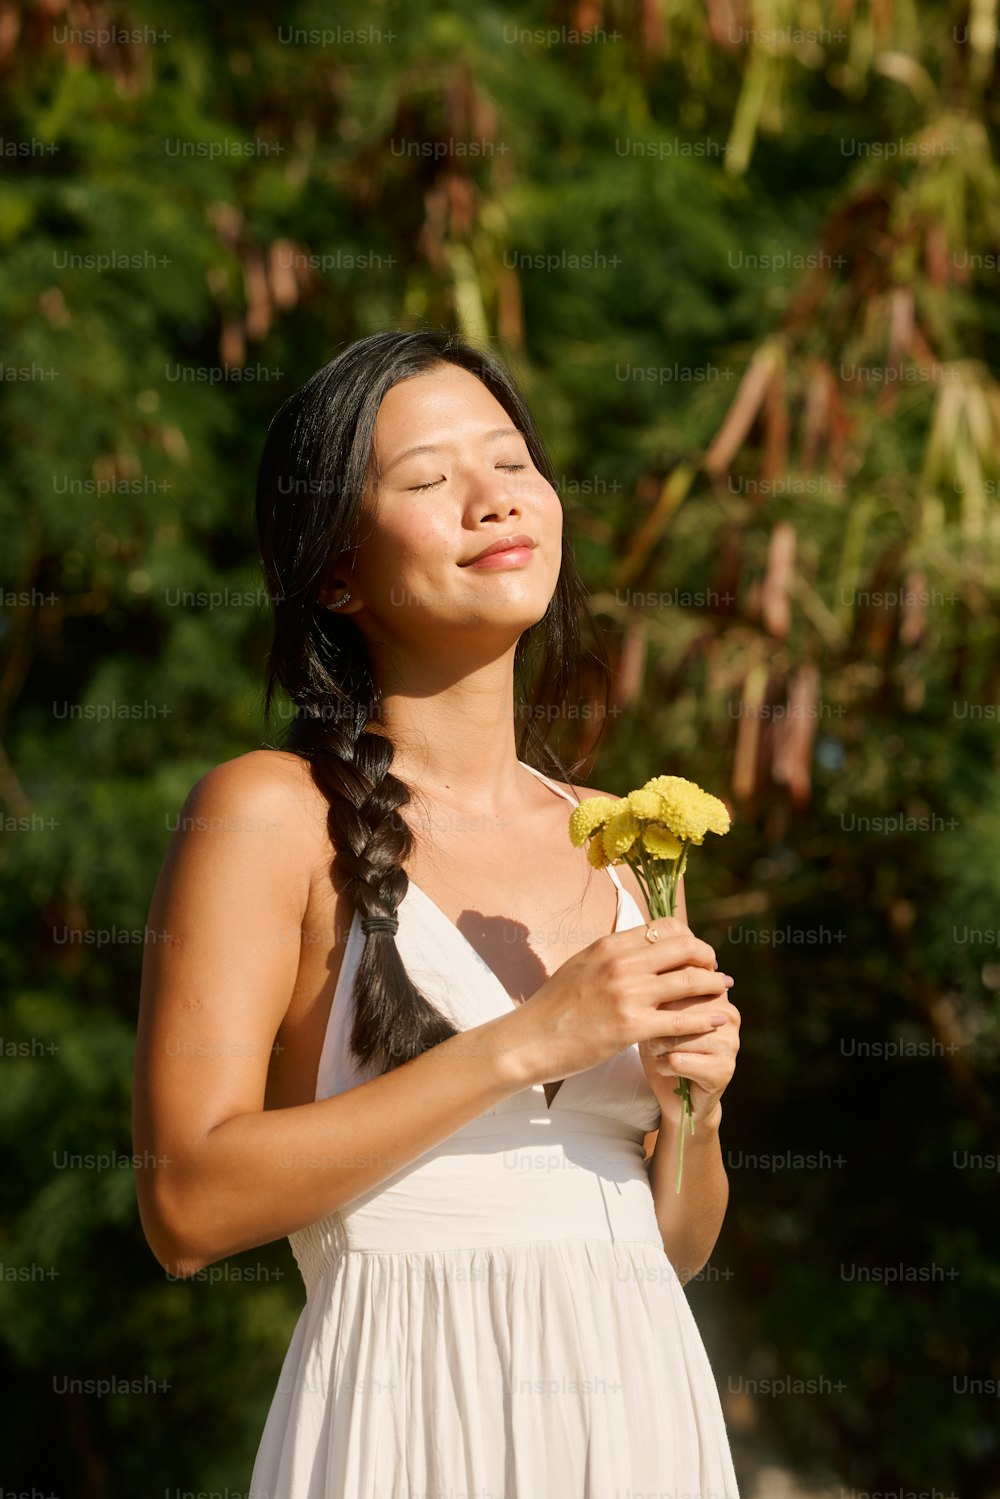 eine Frau in einem weißen Kleid mit einer gelben Blume